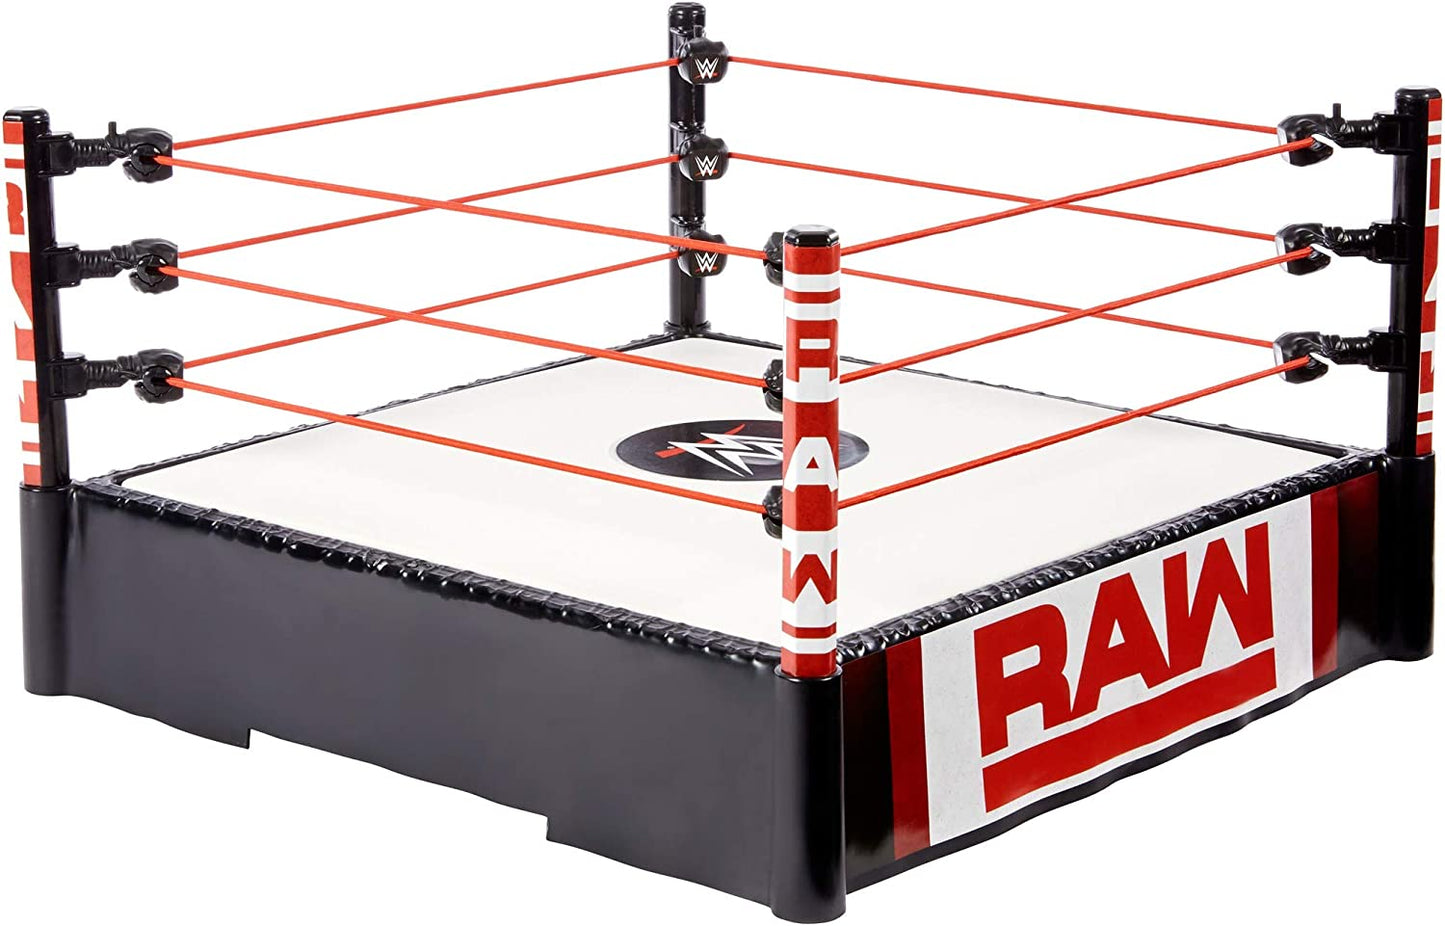 2018 WWE Mattel Basic Raw Ring